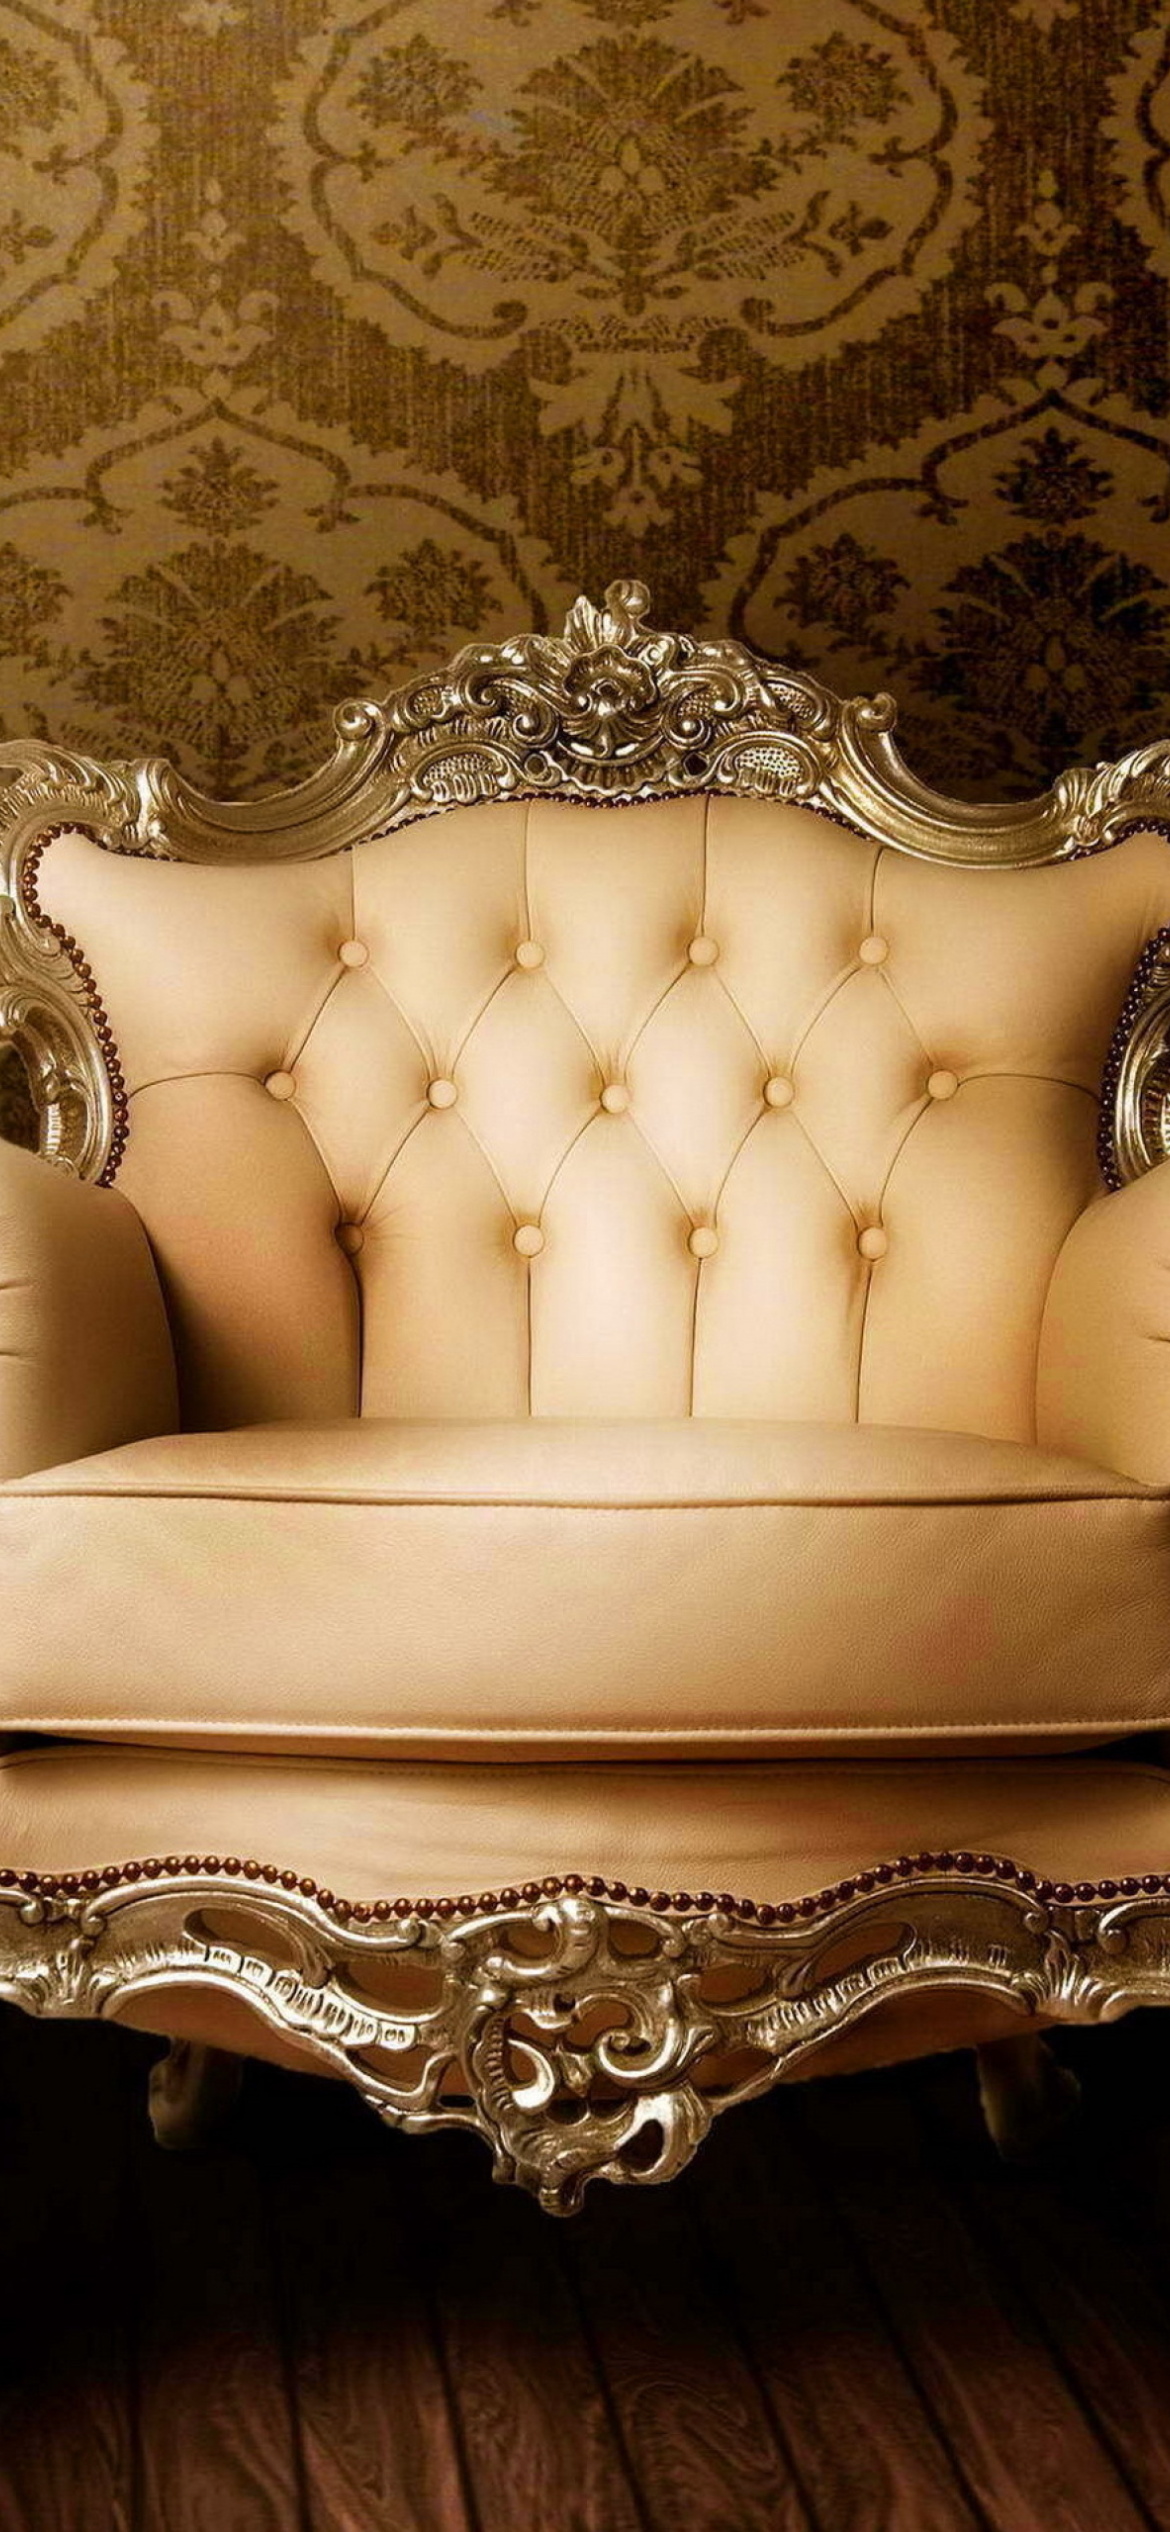 Das Luxury Furniture Wallpaper 1170x2532